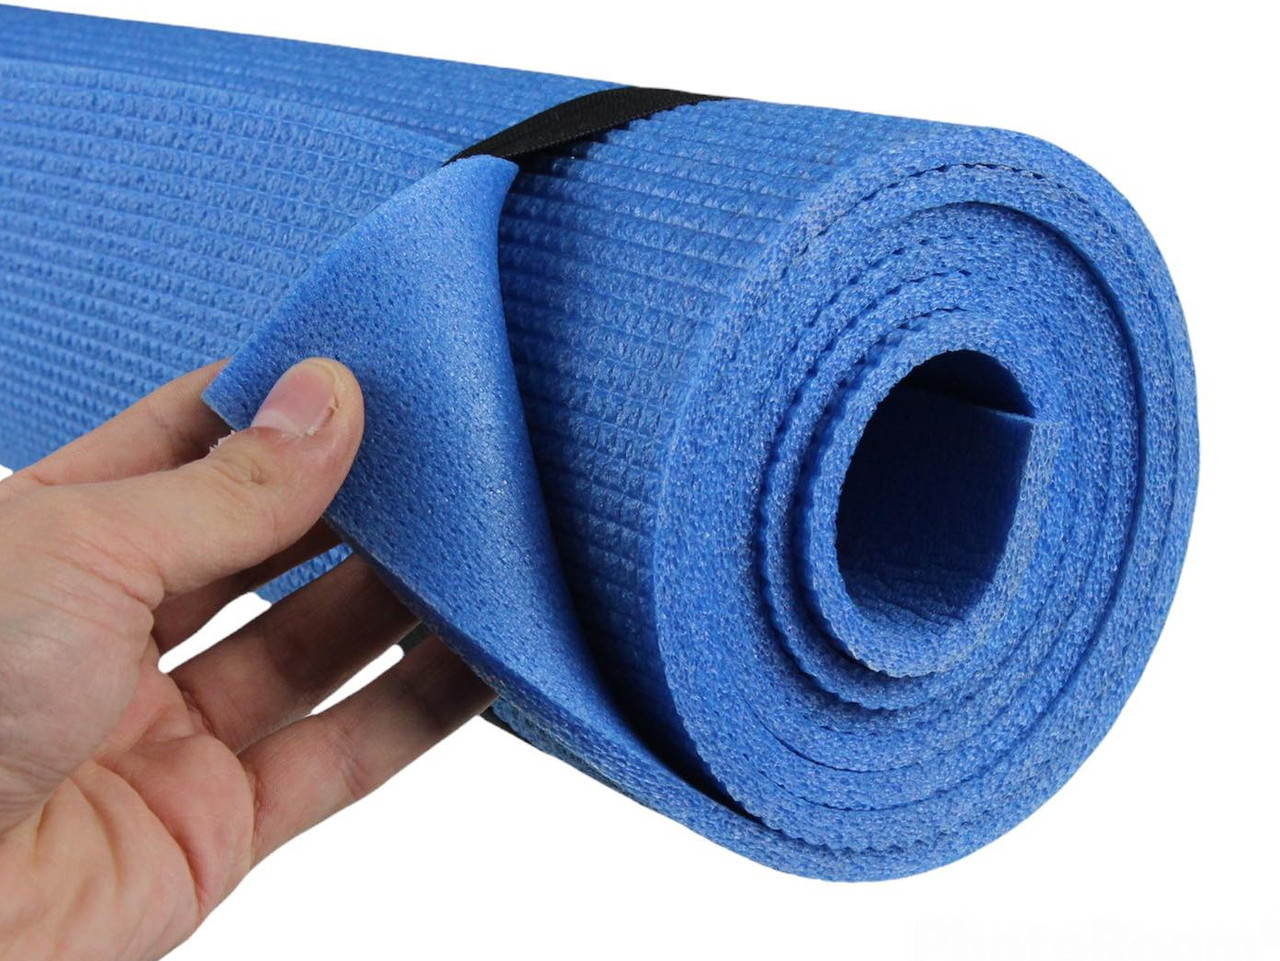 Коврик для фитнеса и йоги AEROBICA 5, синий, толщина 5мм, ширина 60 см детальная фотка